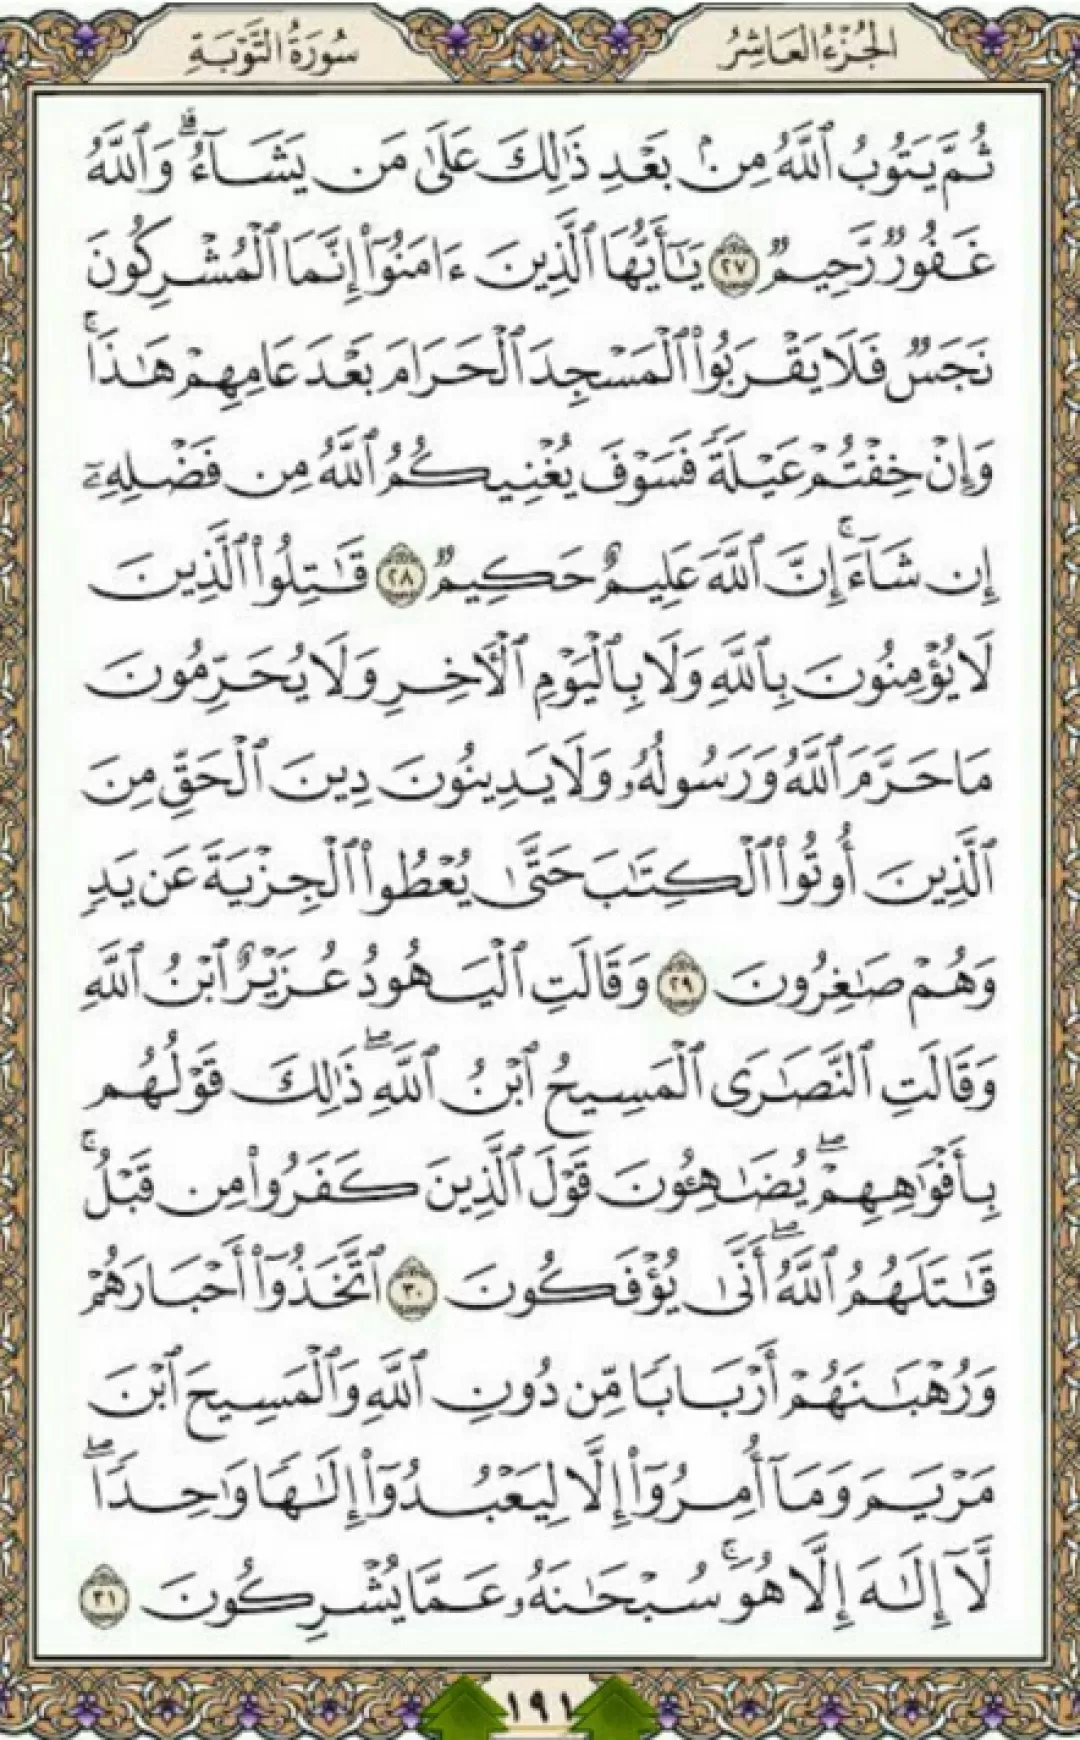 یک صفحه با شمیم قرآن الهی